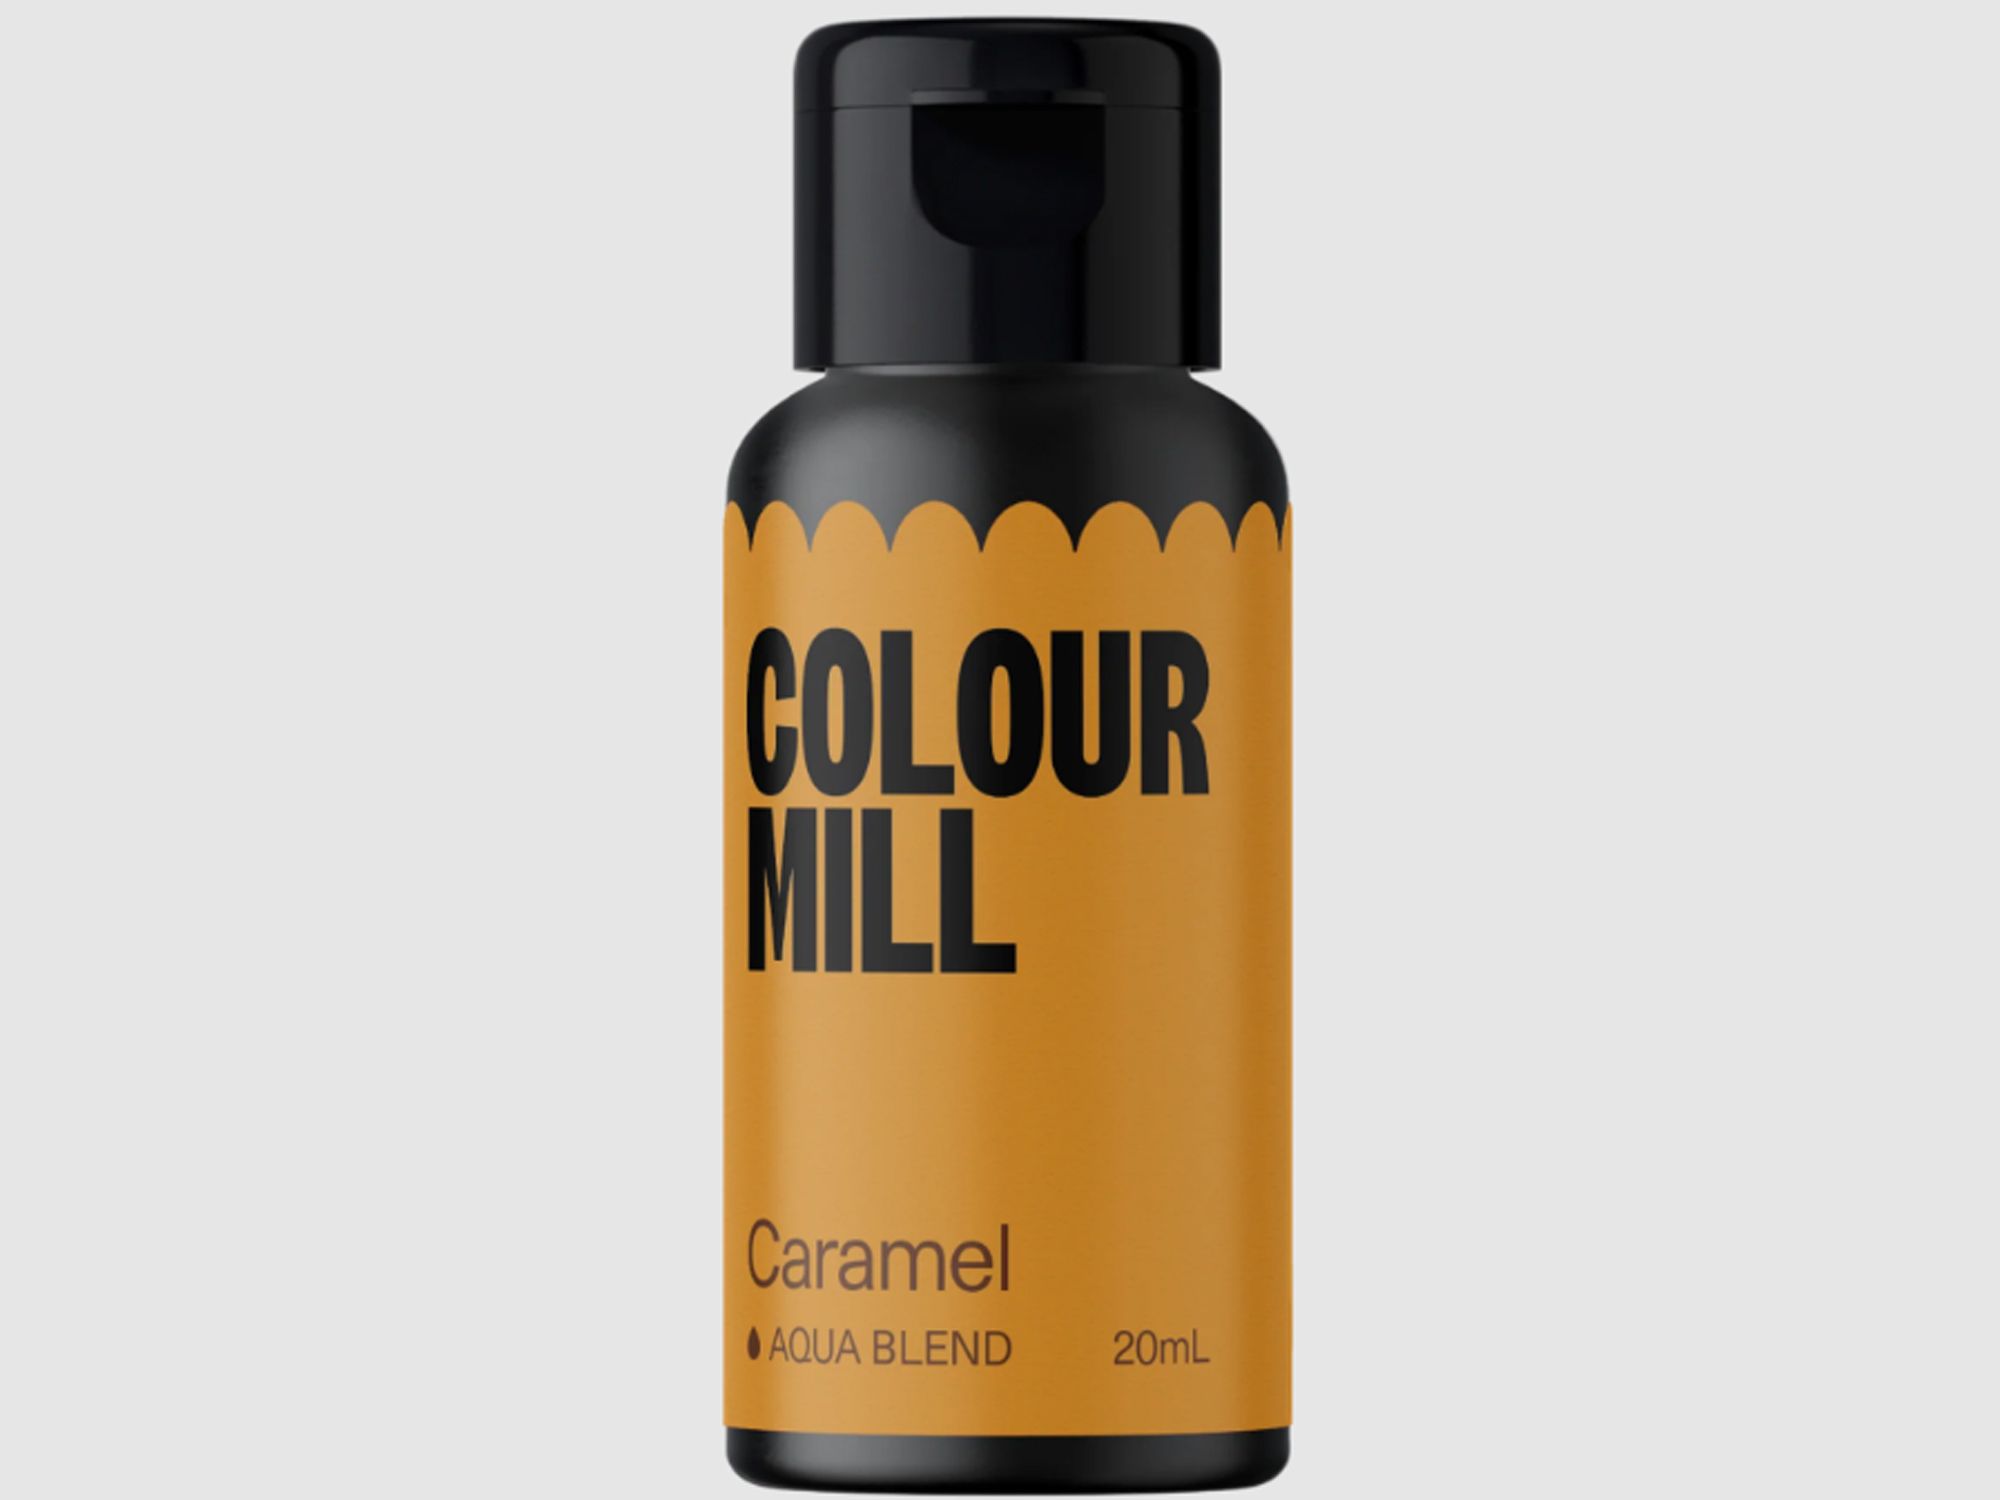 Colour Mill Caramel (Aqua Blend) 20ml